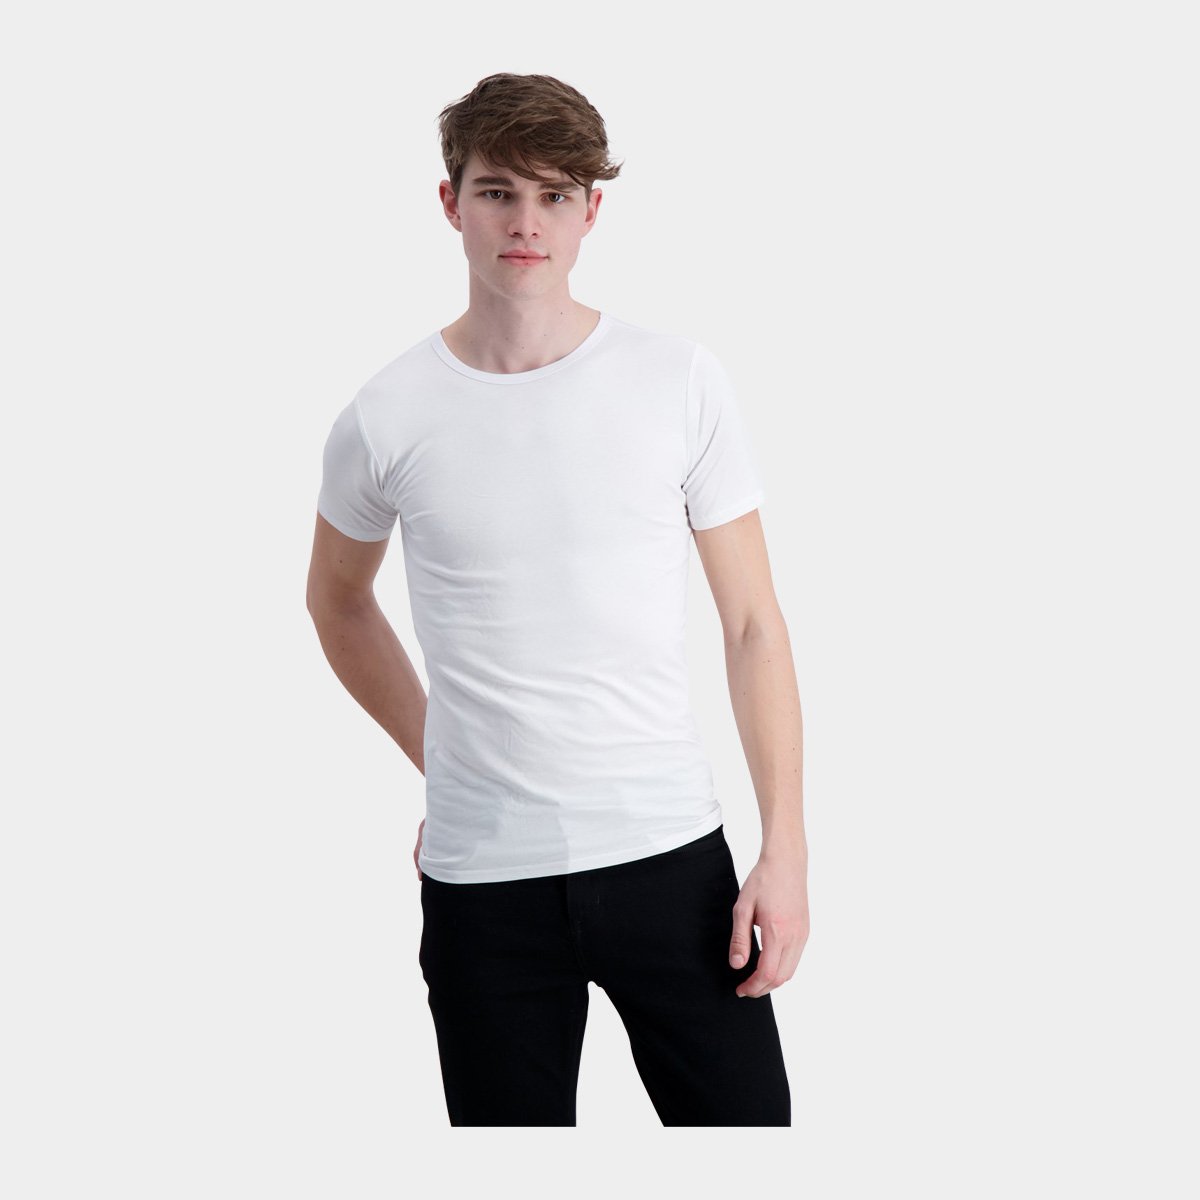 Ved navn Crack pot matrix 2 stk hvide bambus T-shirt til mænd i slim fit model fra Lindbergh –  Bambustøj.dk